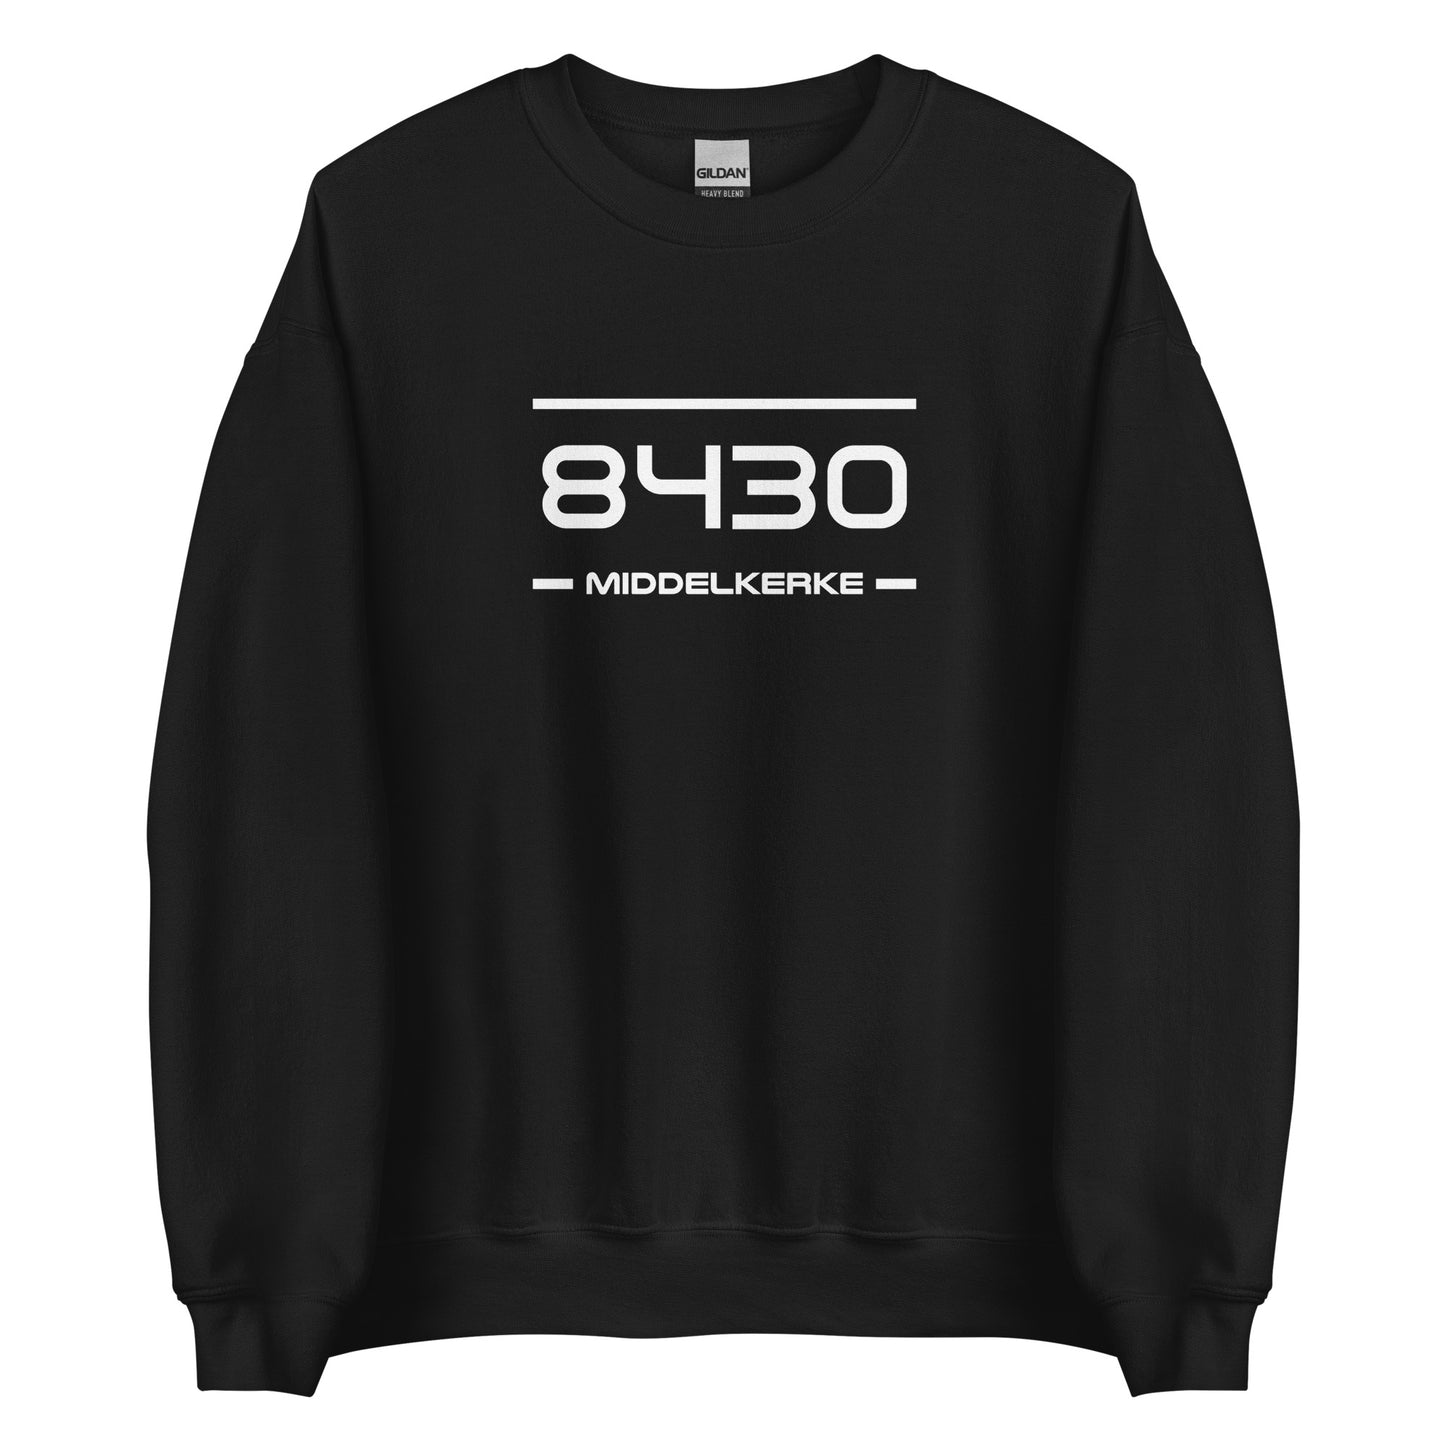 Sweater - 8430 - Middelkerke (M/V)